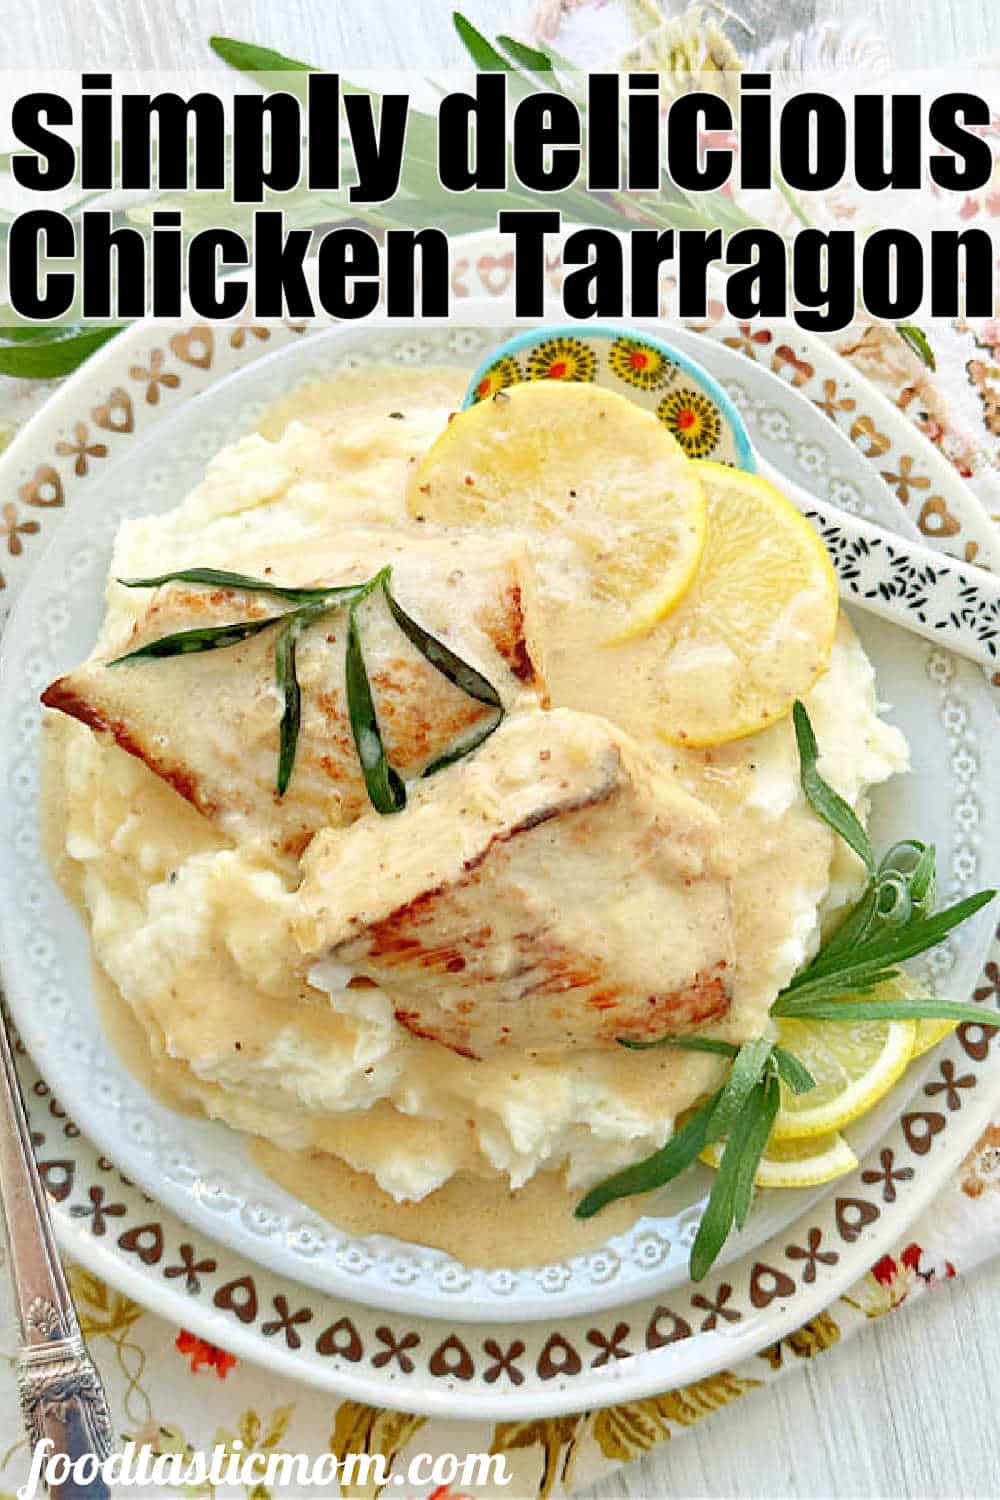 Chicken Tarragon | Foodtastic Mom #chickentarragon #chickenrecipes via @foodtasticmom